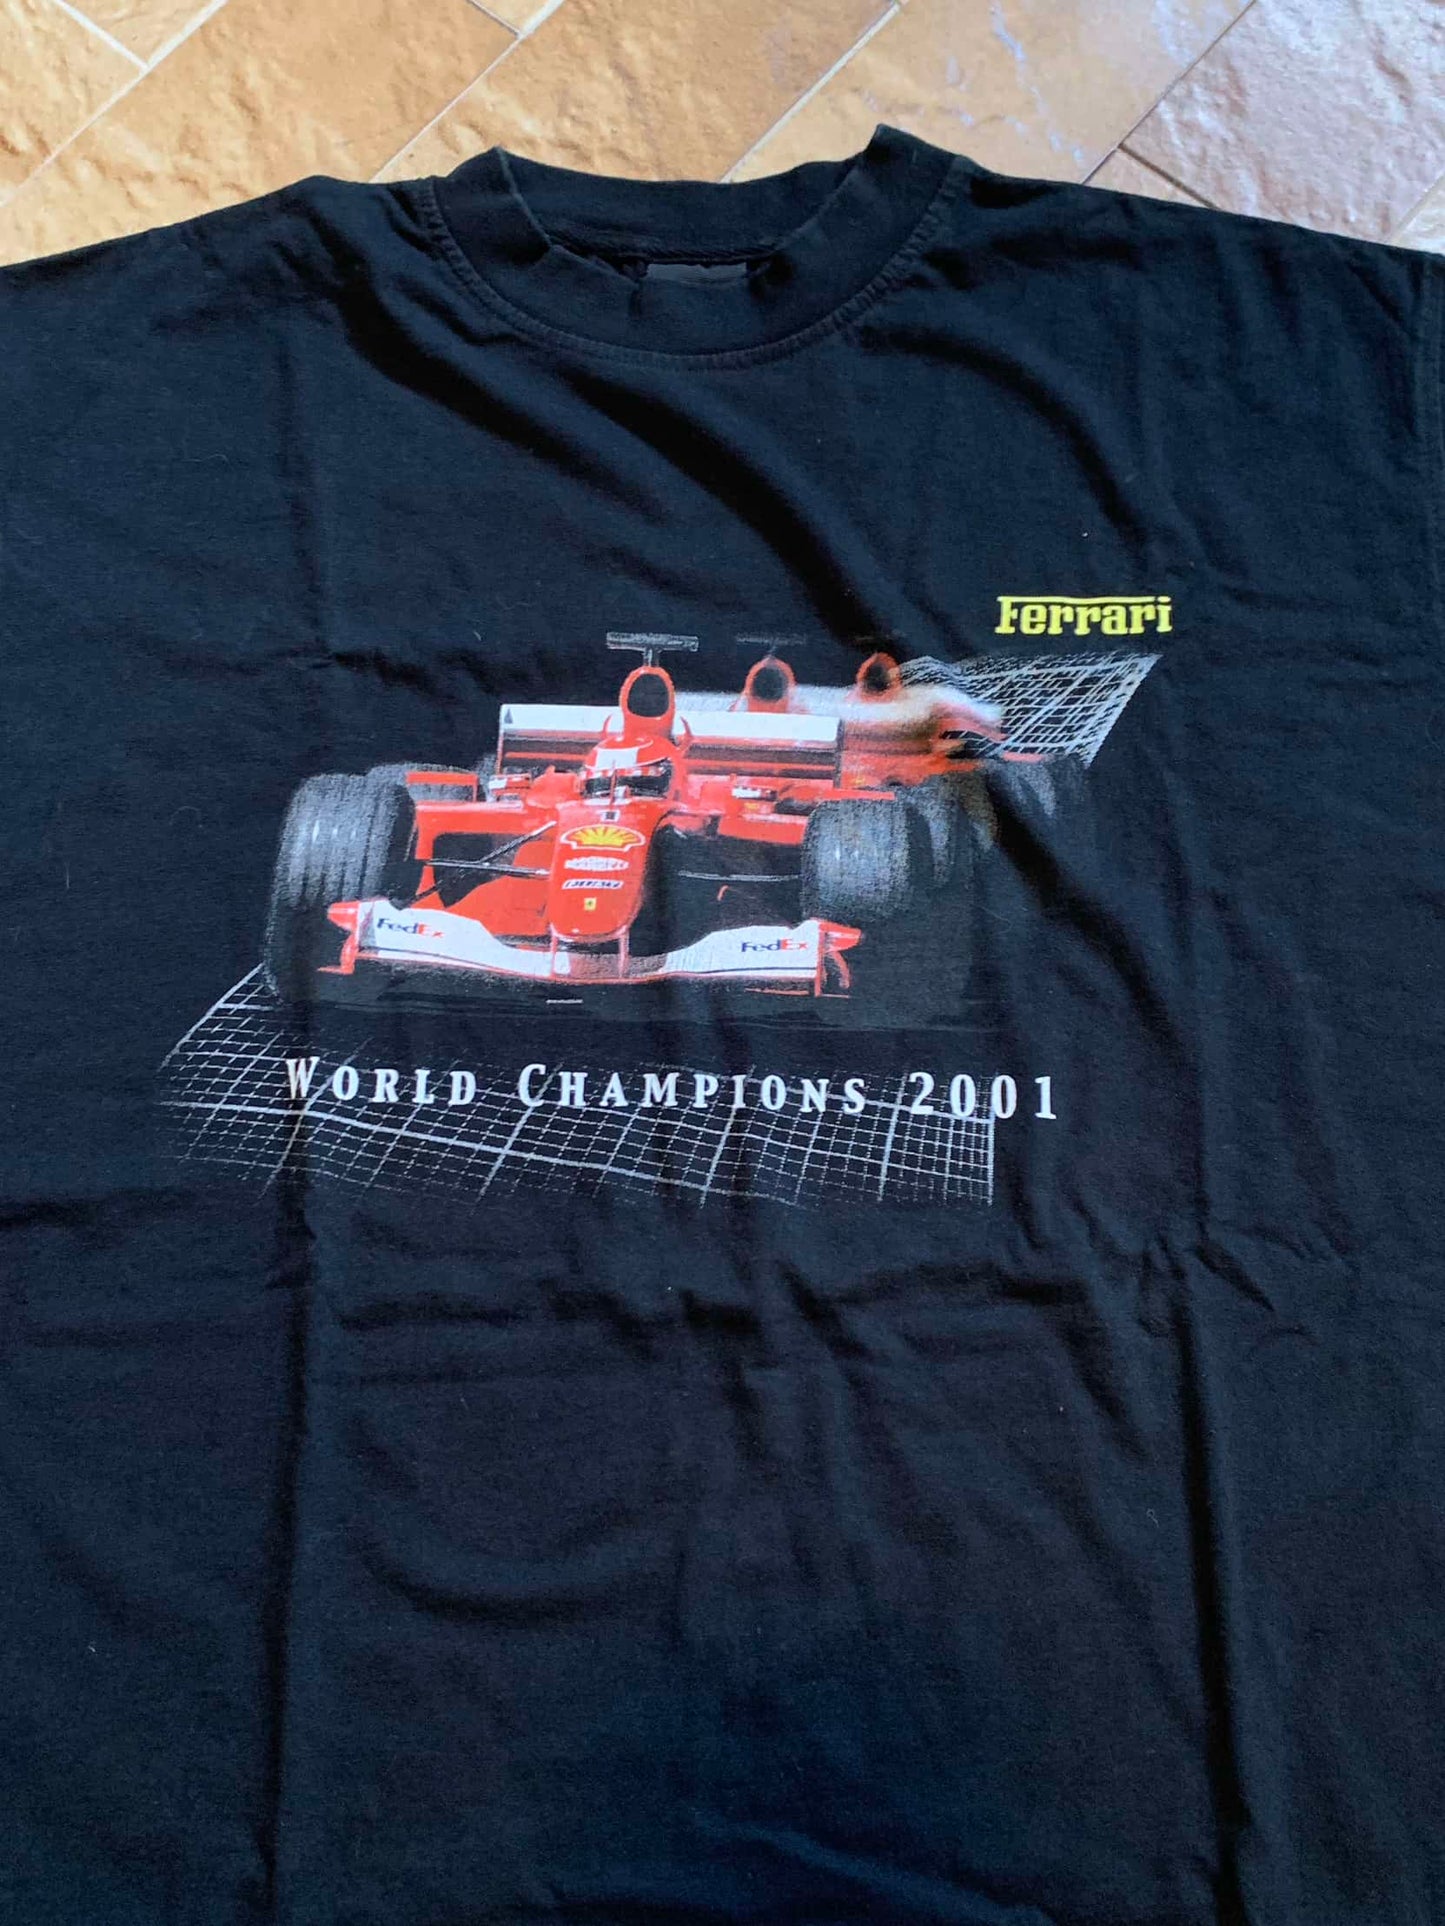 Tee shirt Ferrari Champions 2001 | L